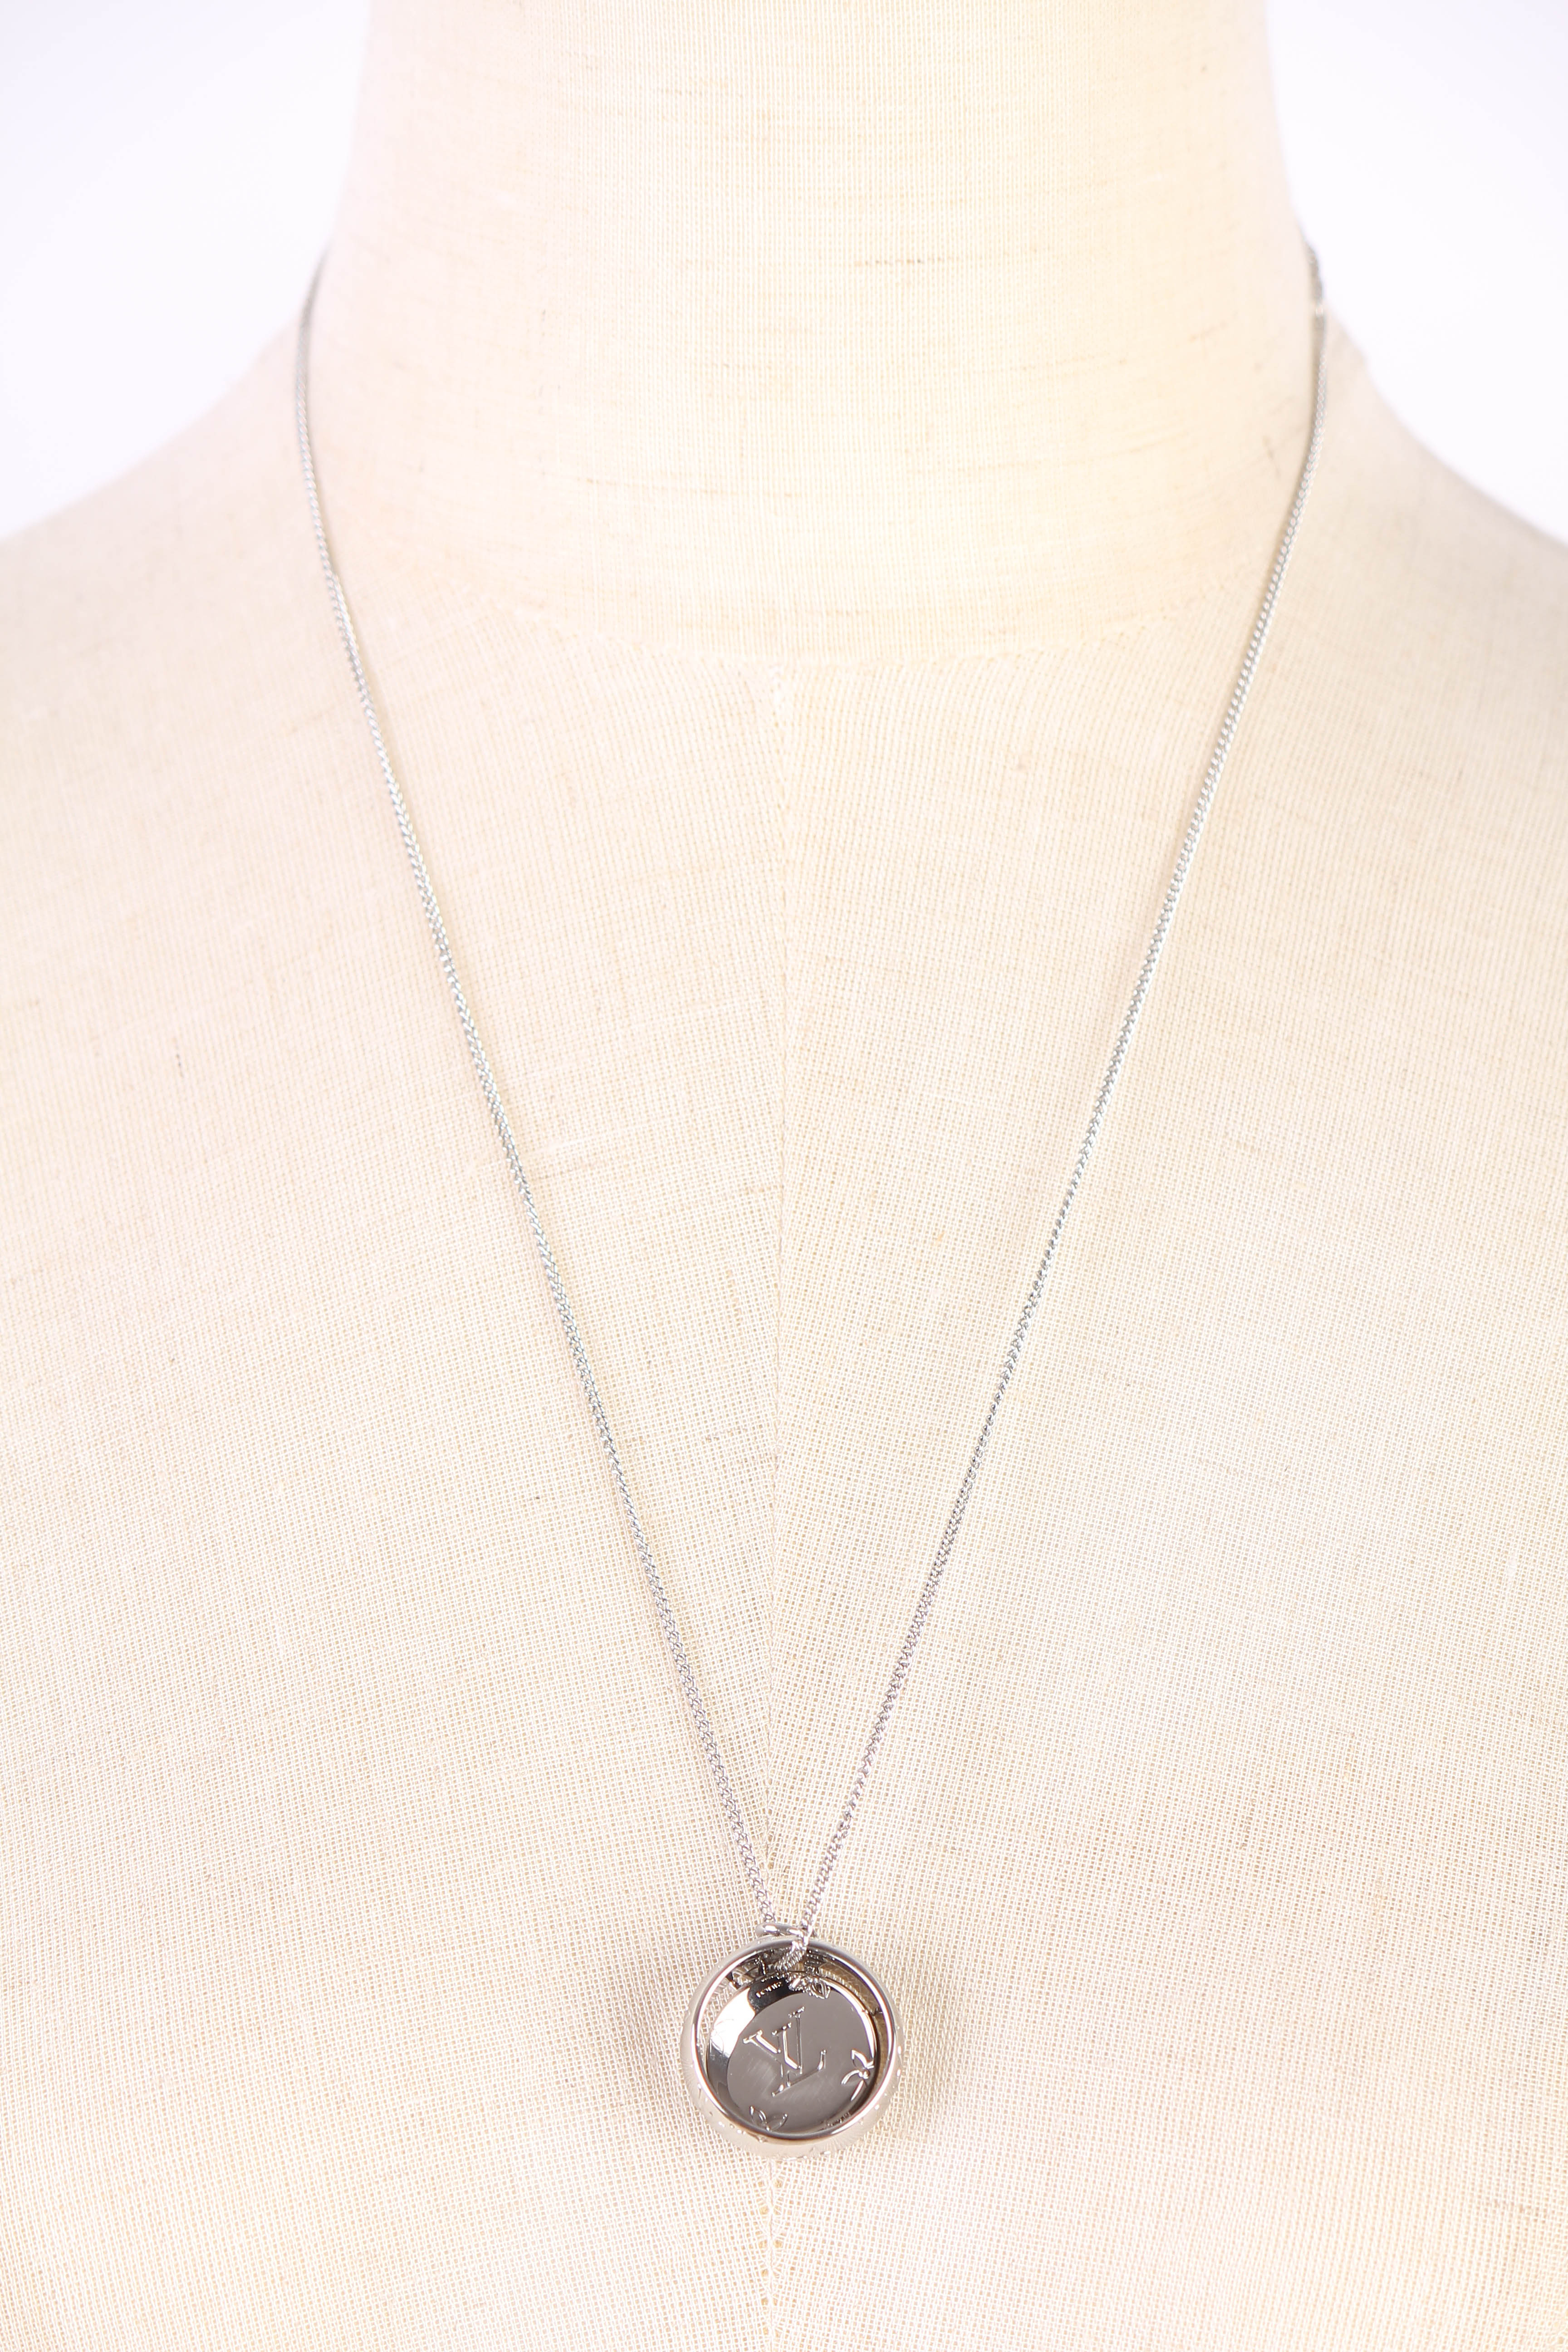 Louis Vuitton Monogram Charms Necklace (MONOGRAM CHARM NECKLACE, M62485)